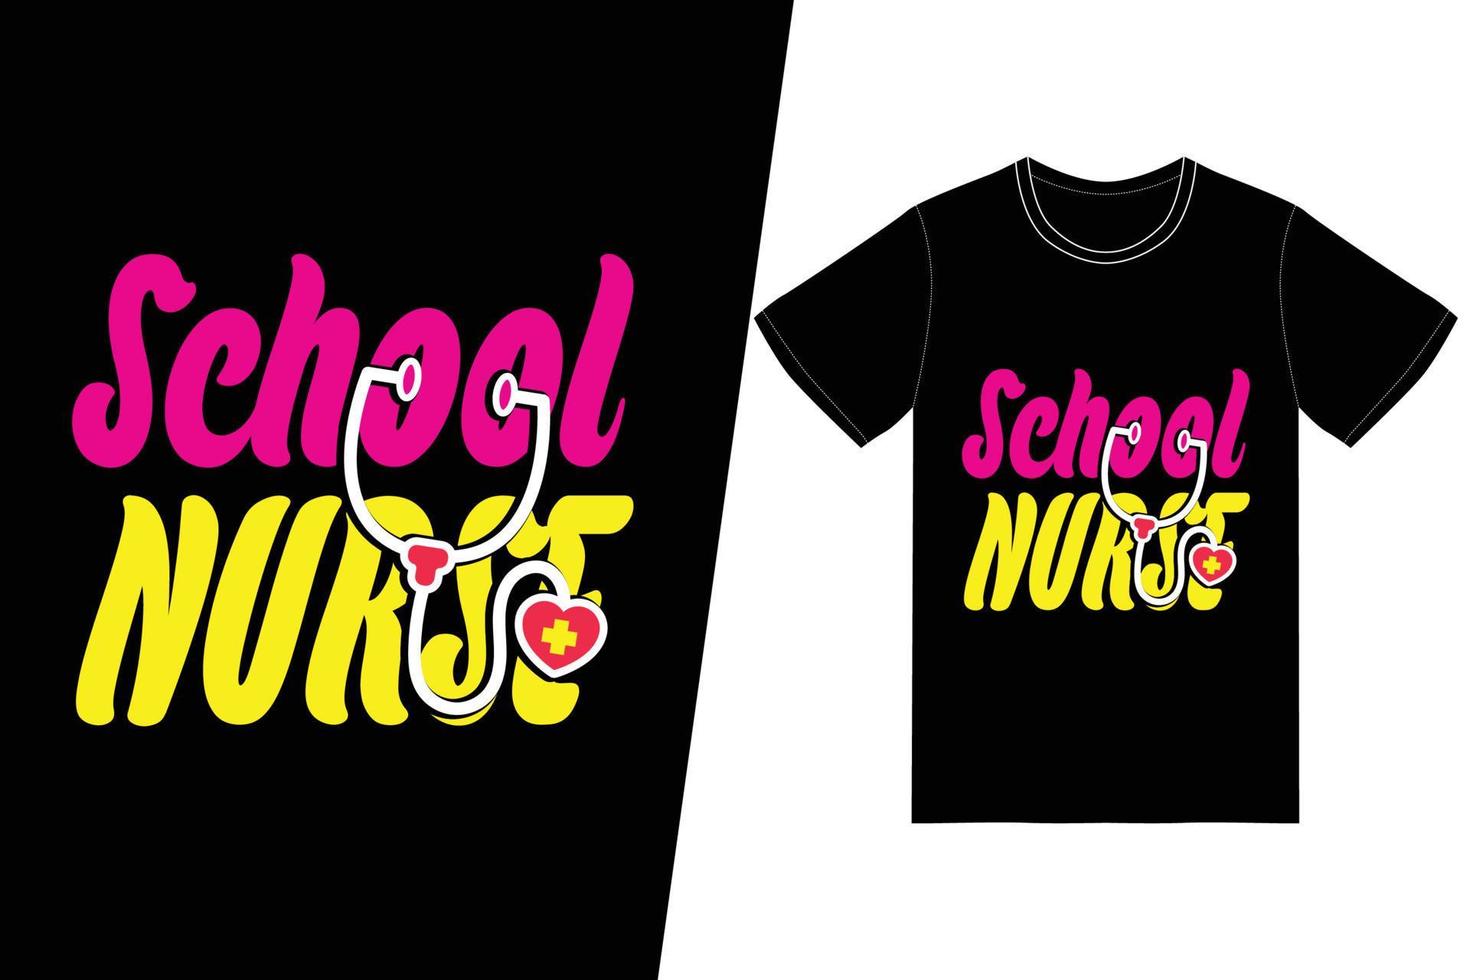 diseño del día de la enfermera de la enfermera escolar. vector de diseño de camiseta de enfermera. para la impresión de camisetas y otros usos.